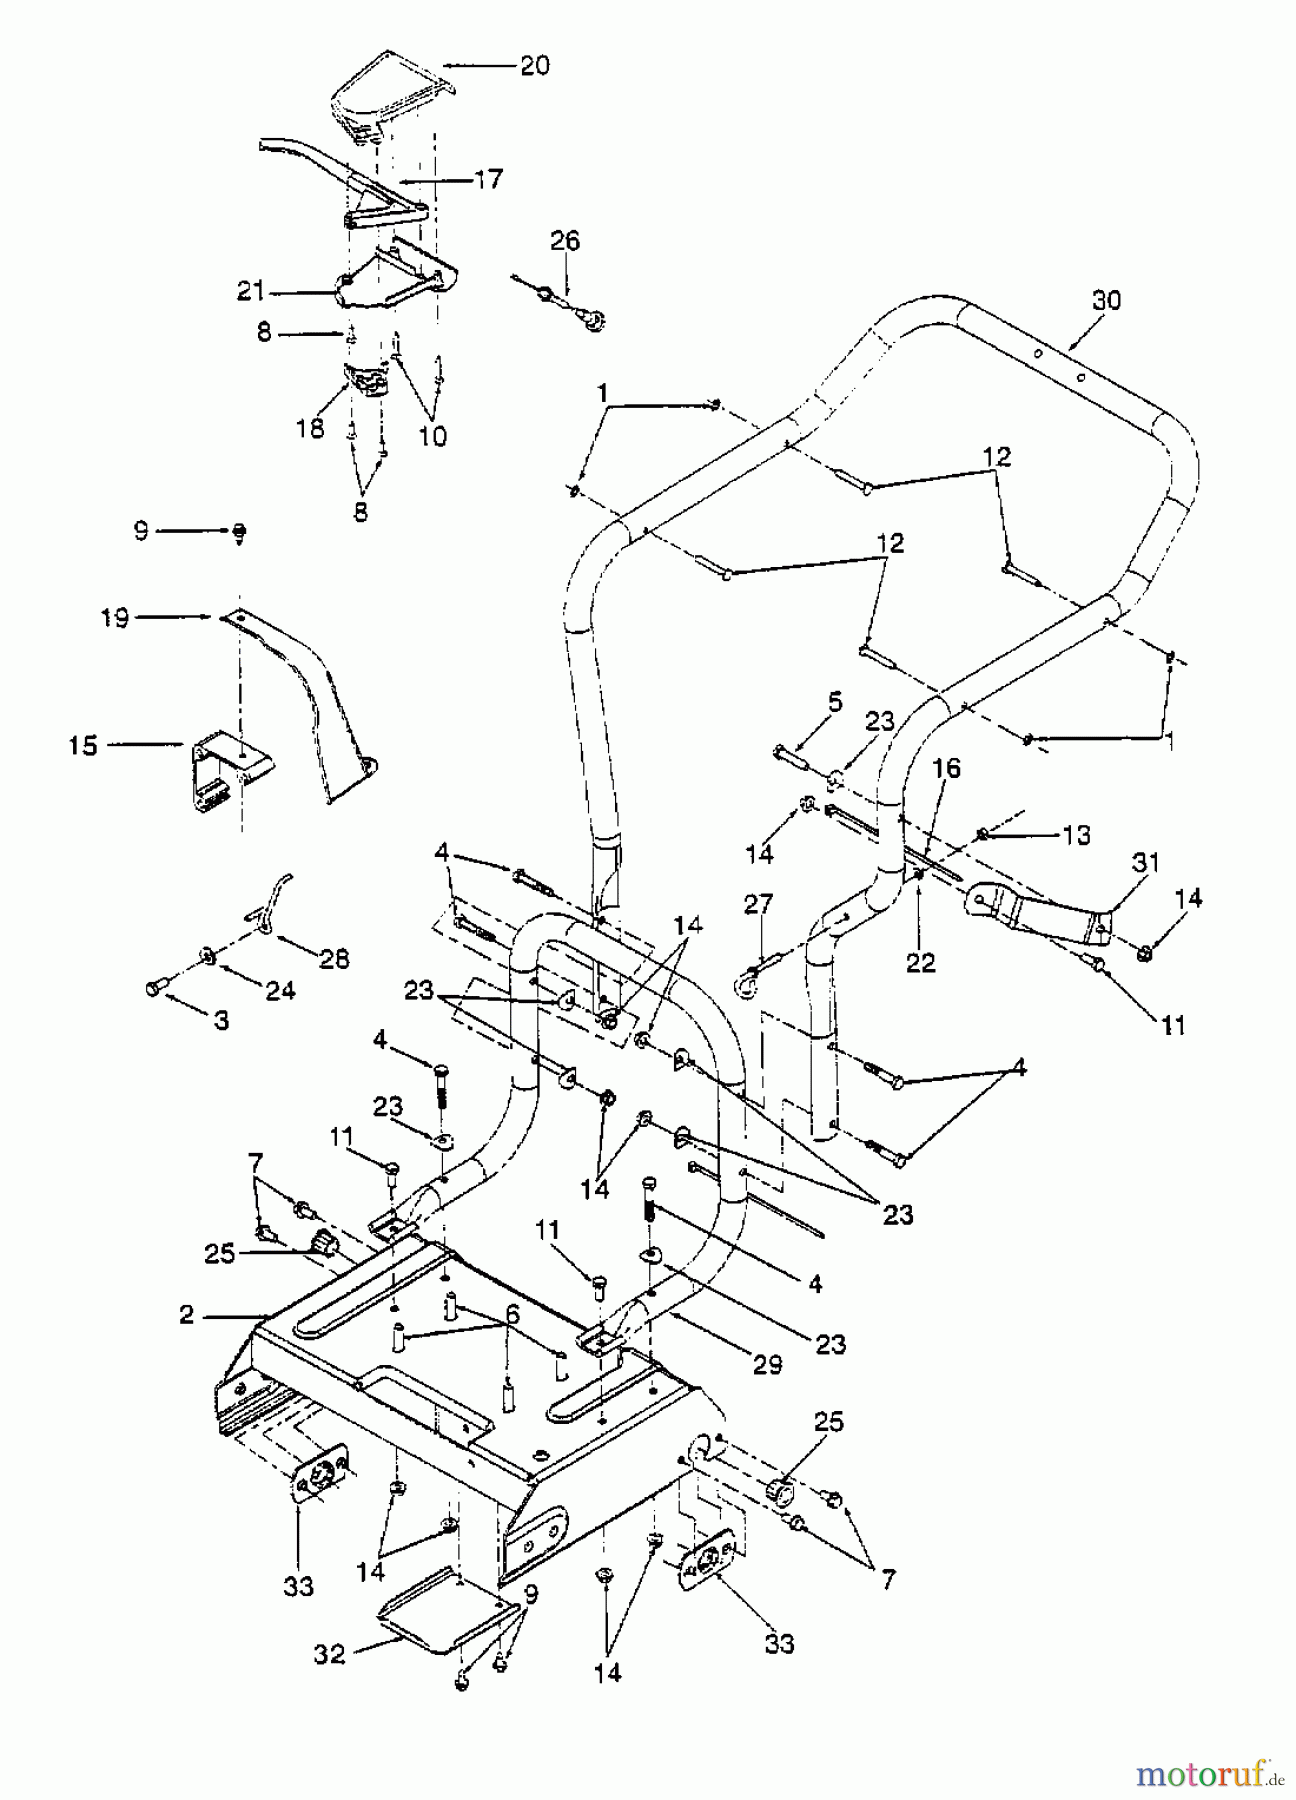  Gutbrod Leaf blower, Blower vac 202 24A-202B604  (1998) Handle